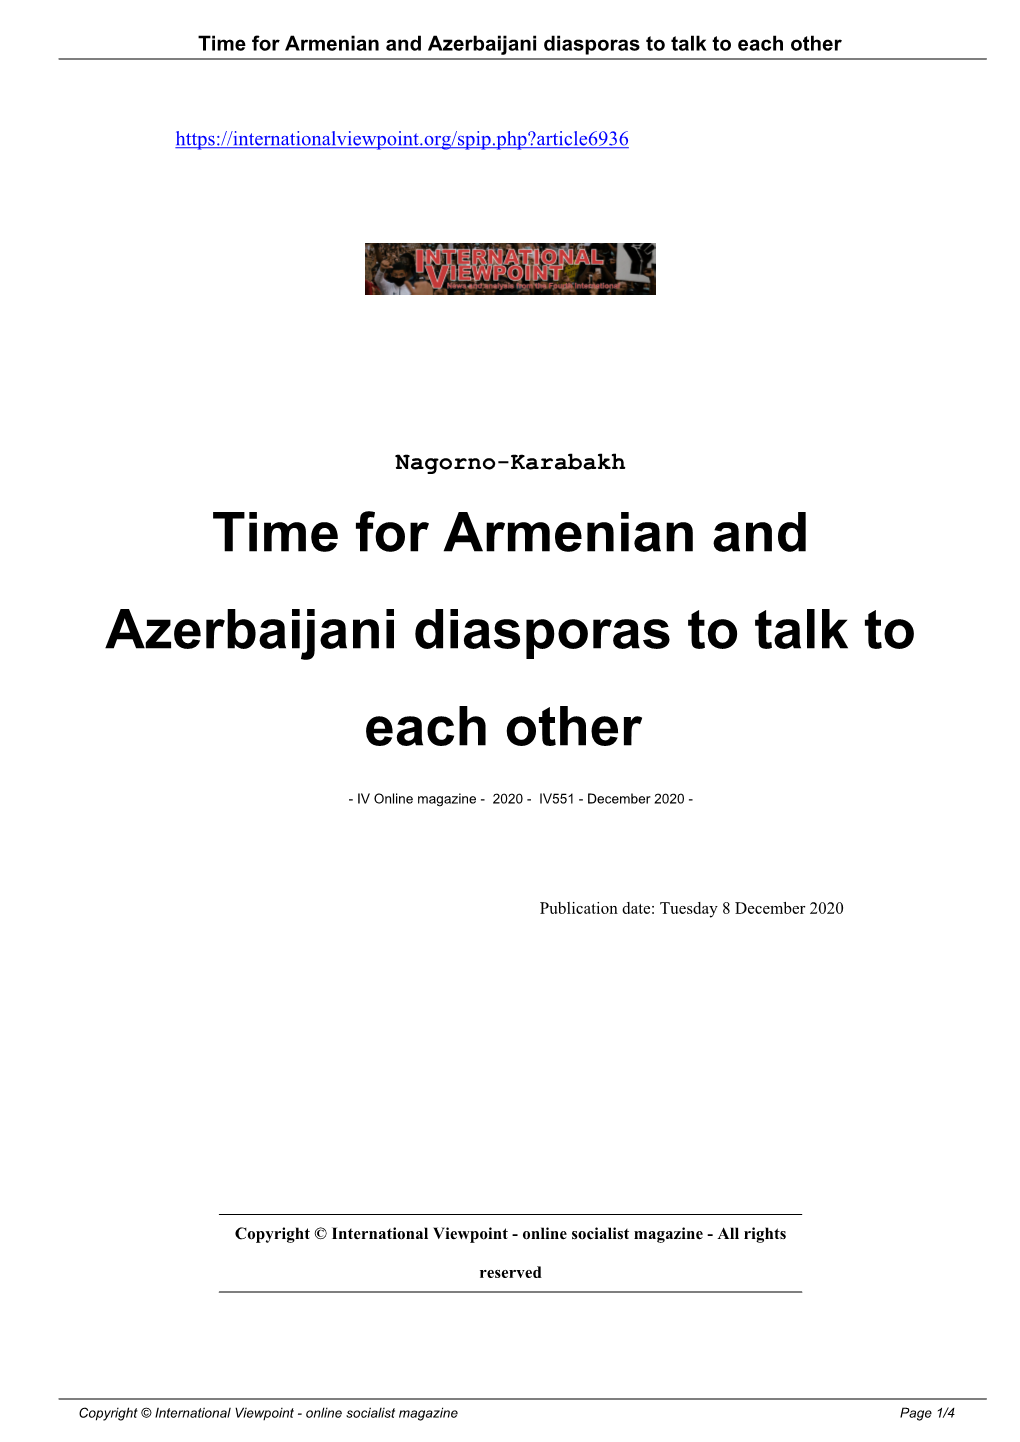 Time for Armenian and Azerbaijani Diasporas to Talk to Each Other